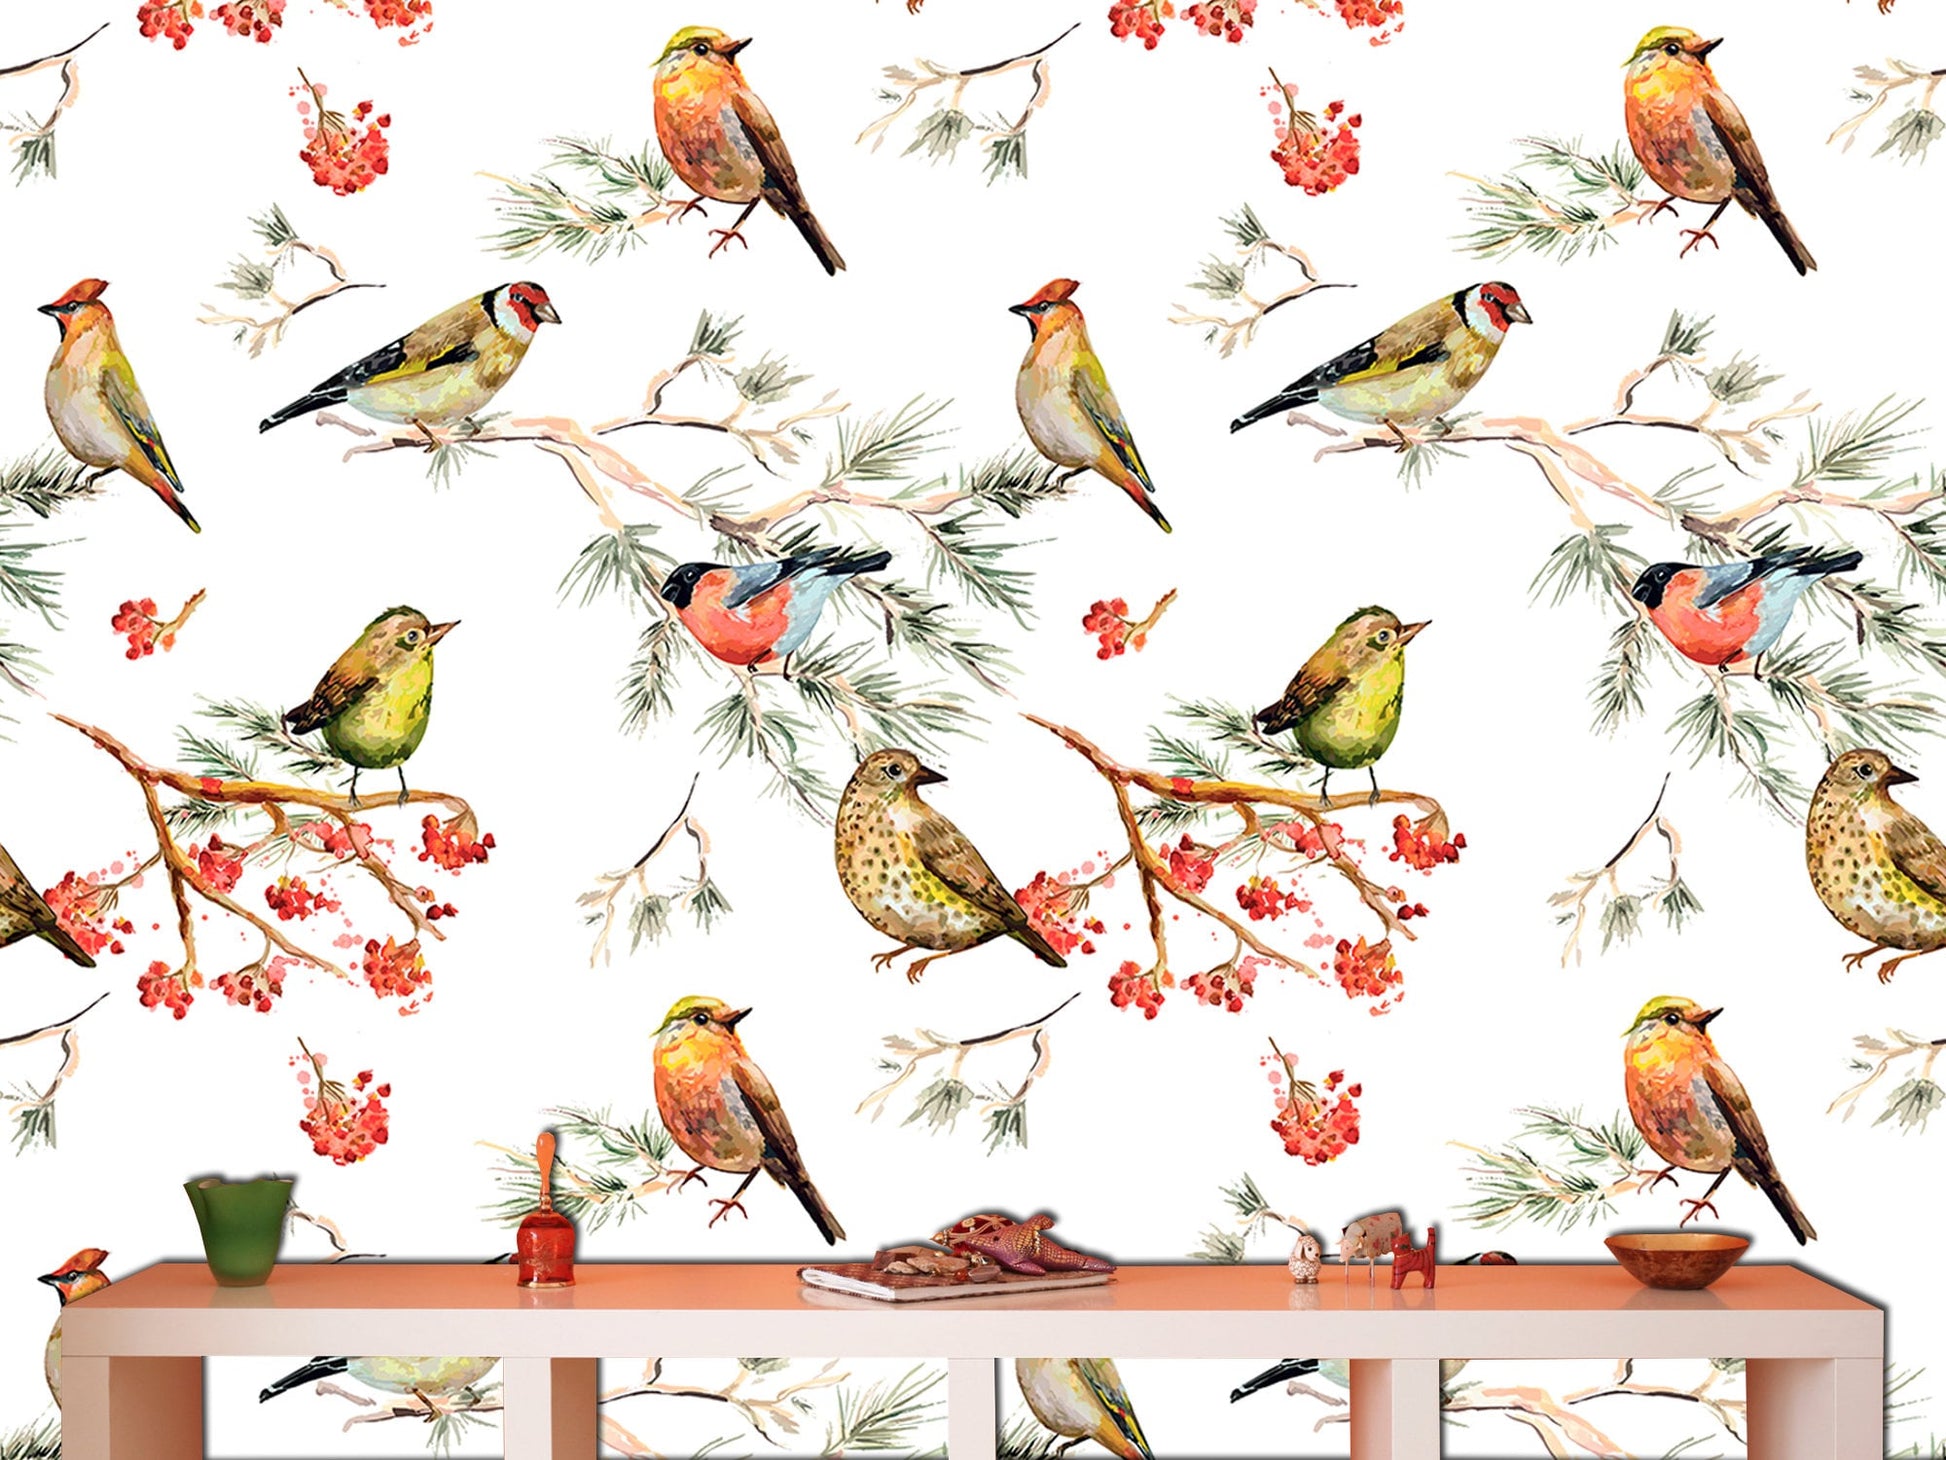 Winter bird decor Forest wallpaper Bird wall art, Art deco wallpaper Bird lover gift Colorful home decor